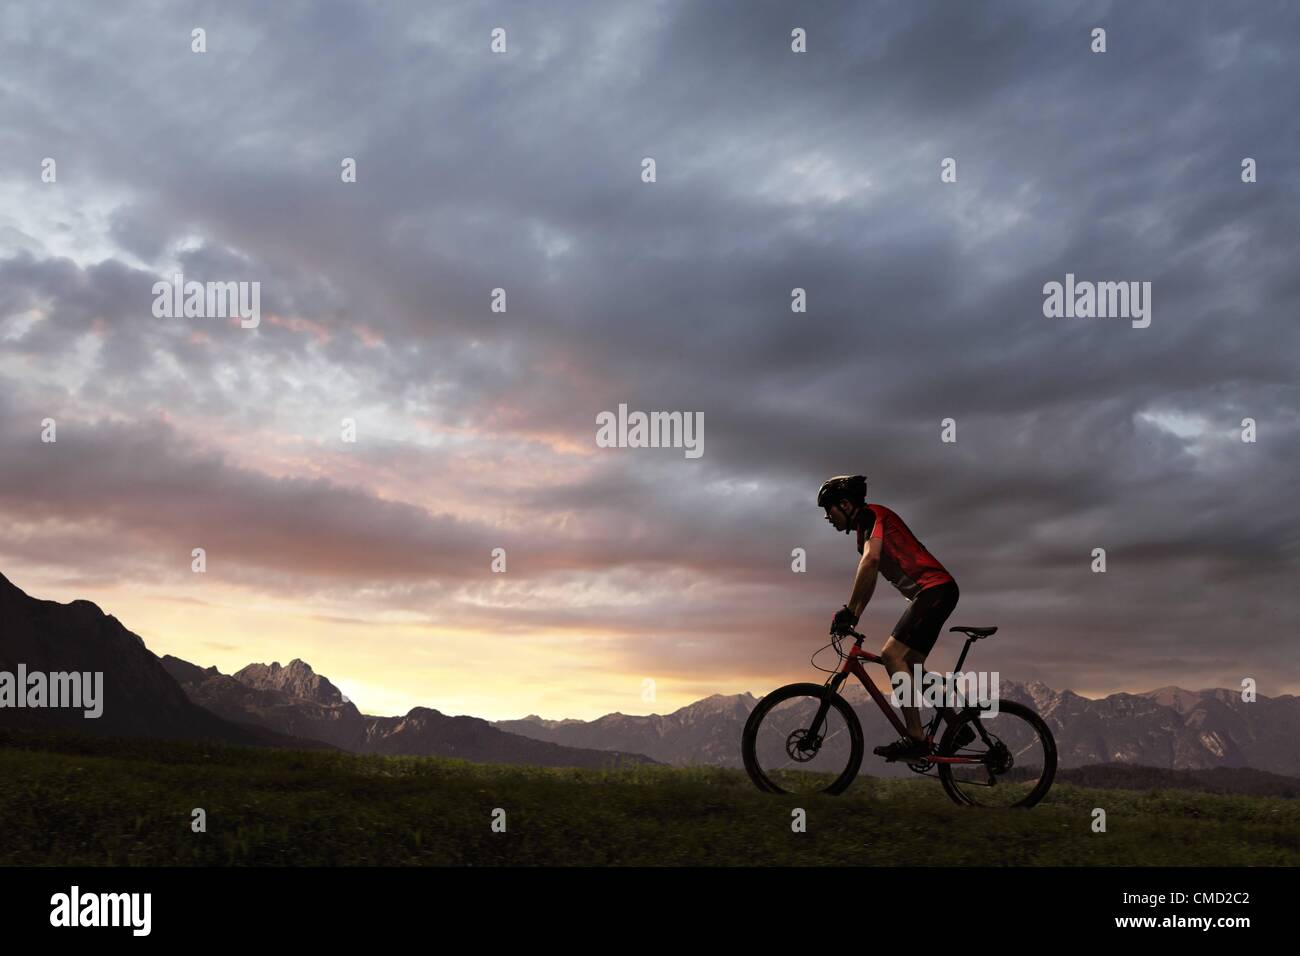 08.11.2011. Germania. Modello rilasciato la foto di un ciclista in sella nell'ambiente SUN. Foto Stock